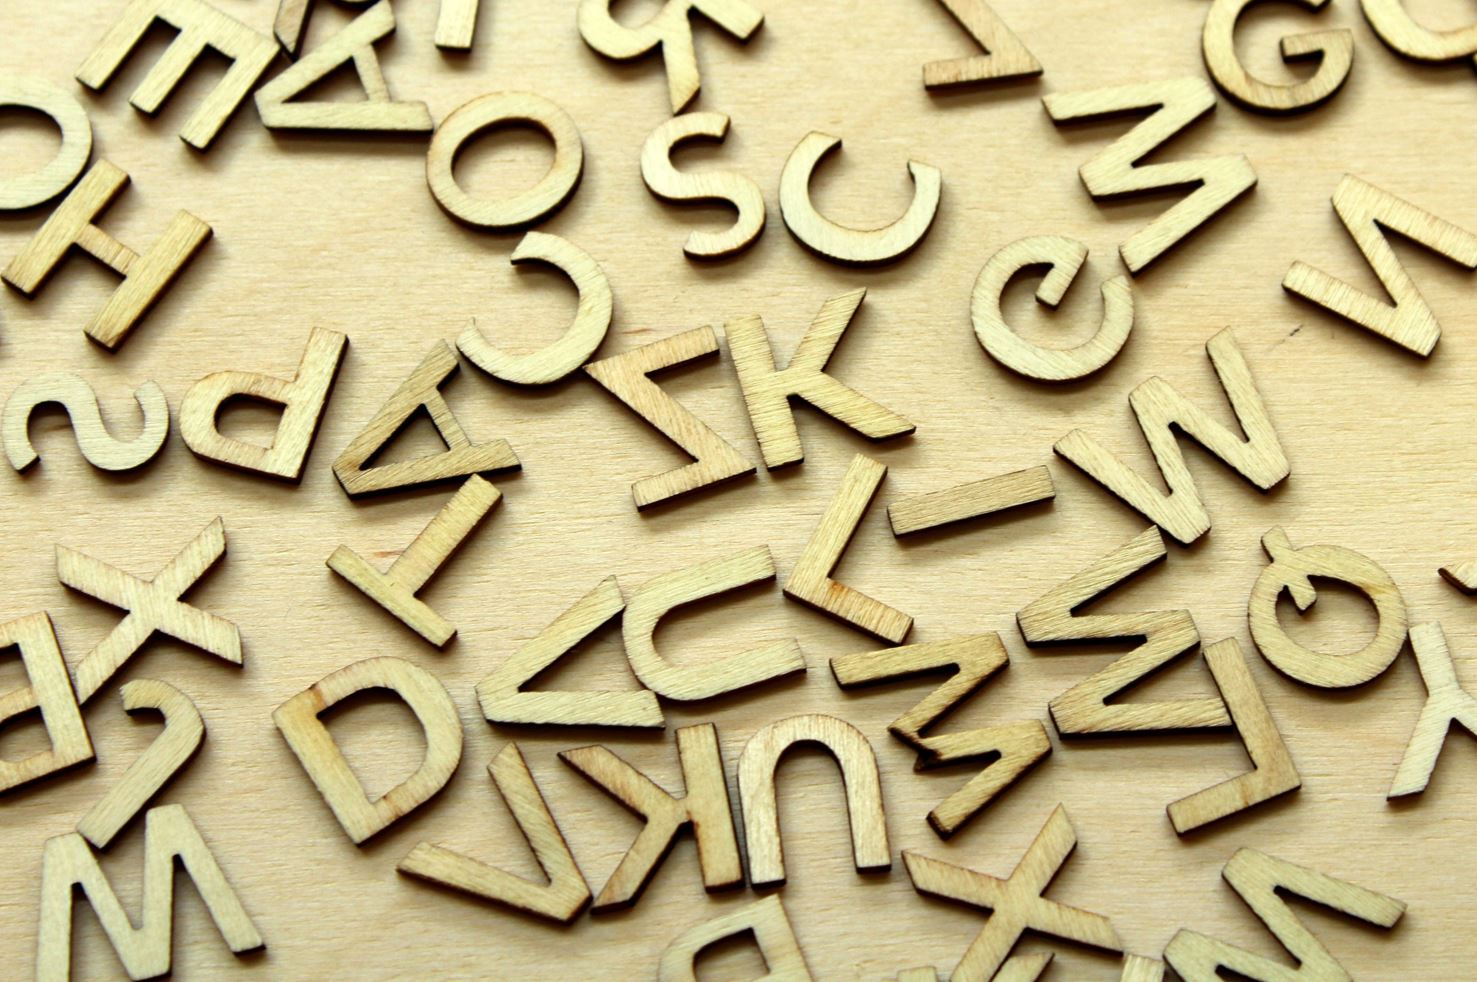 La creació de nous significats de les paraules té raons comunes en 1.400 llengües, segons un estudi liderat per la UPF publicat a Science